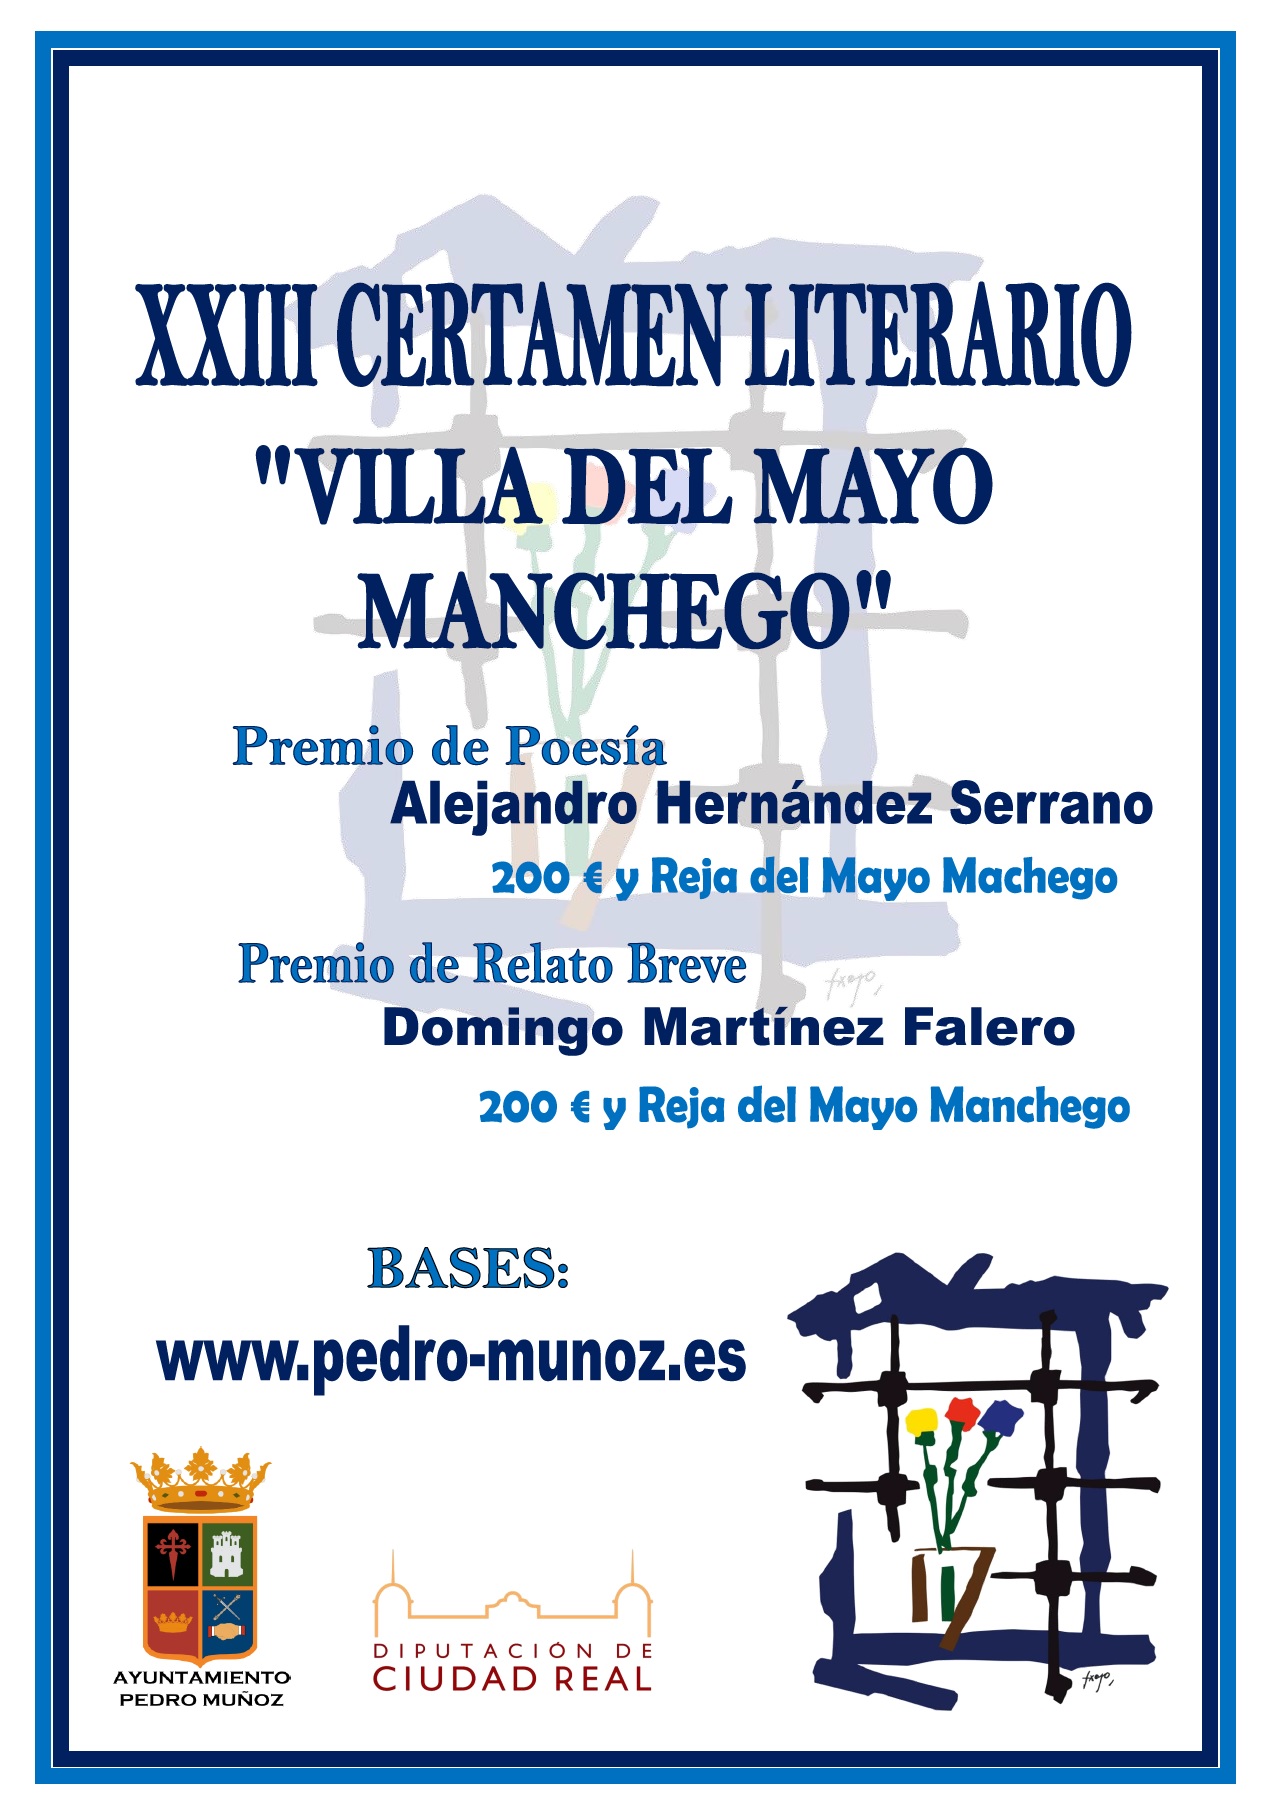 Publicadas las bases de la XXIII edición del certamen literario "Villa del Mayo Manchego"